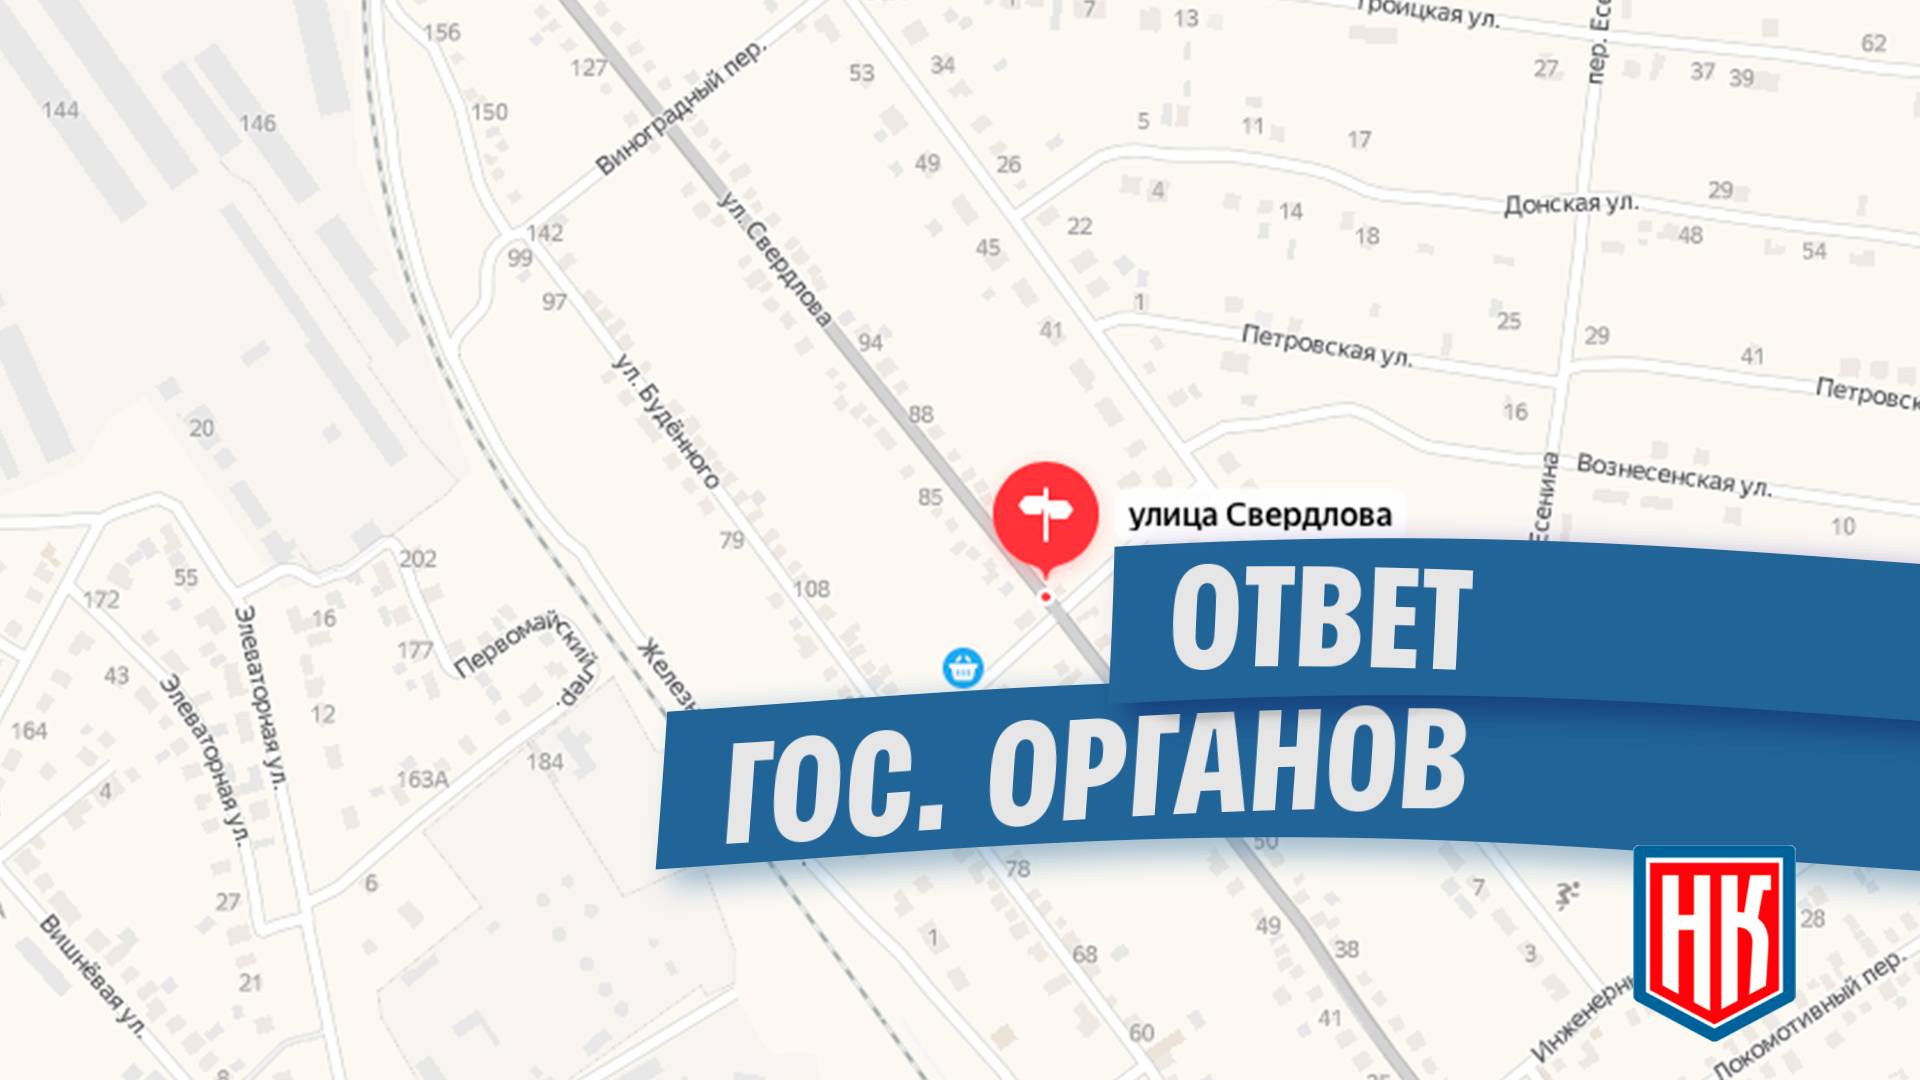 Ответ по состоянию дороги в станице Егорлыкская